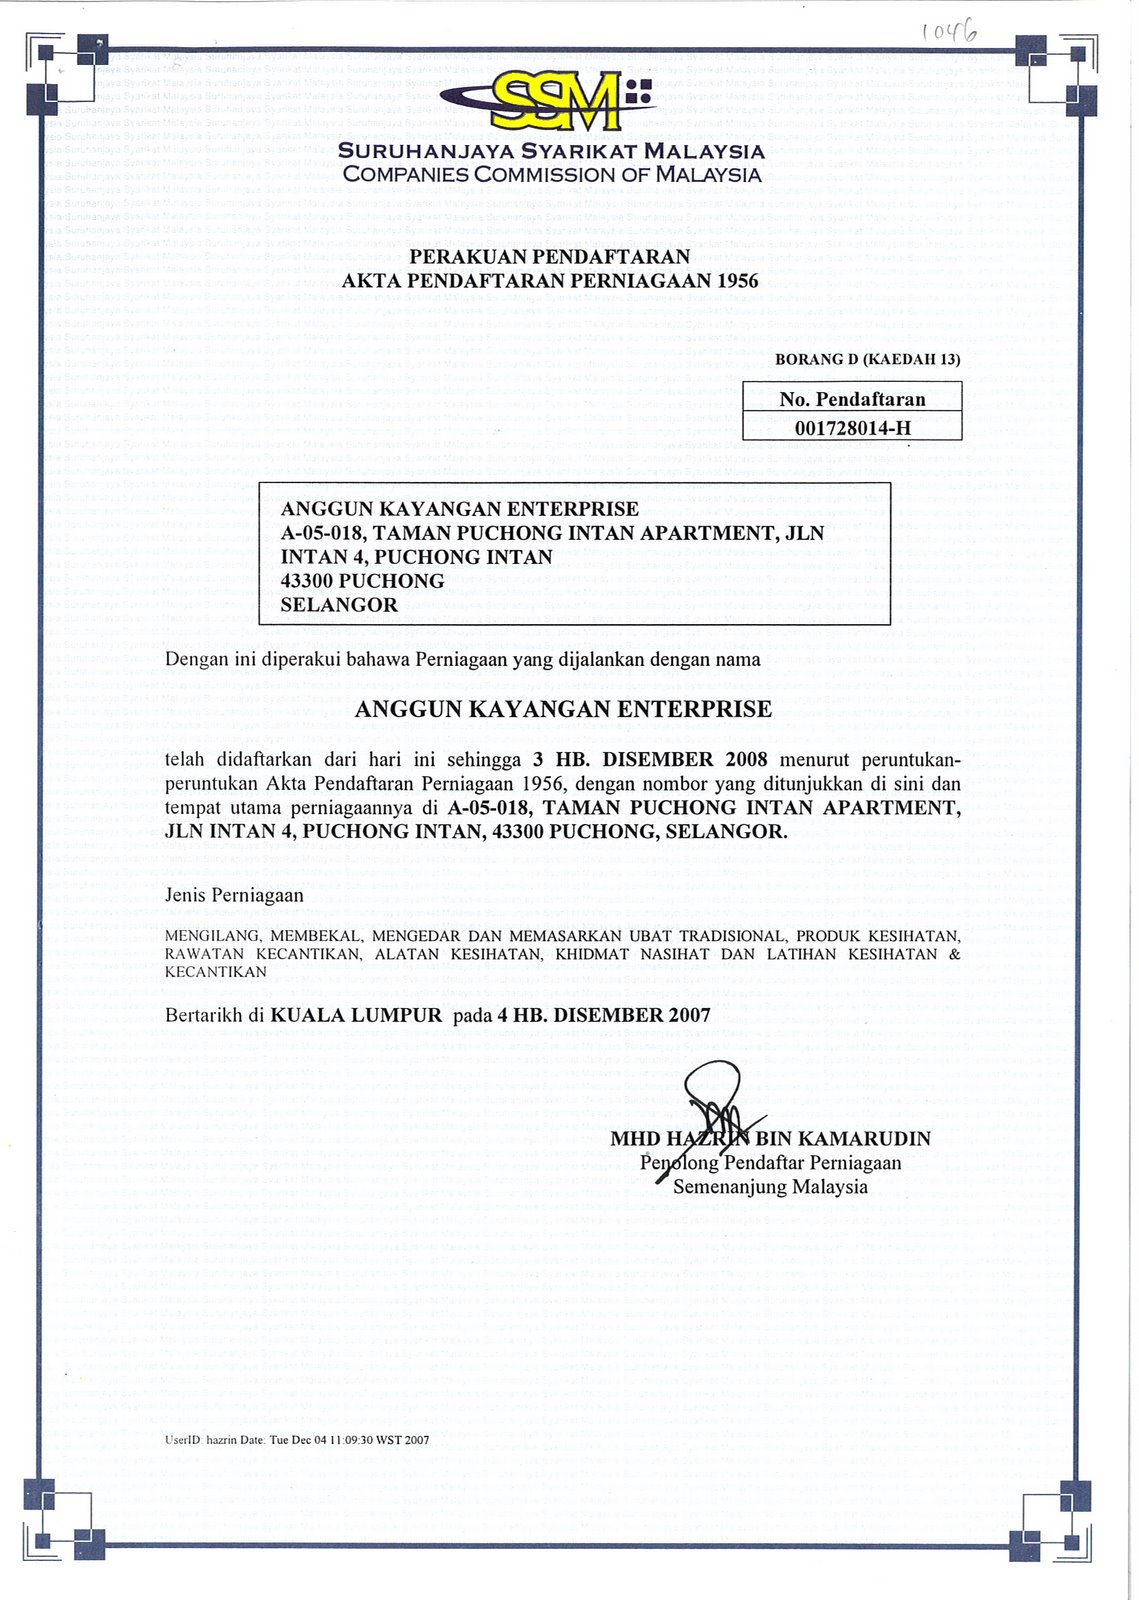 Perakuan Pendaftaran Perniagaan/ Certificate of Company Registration